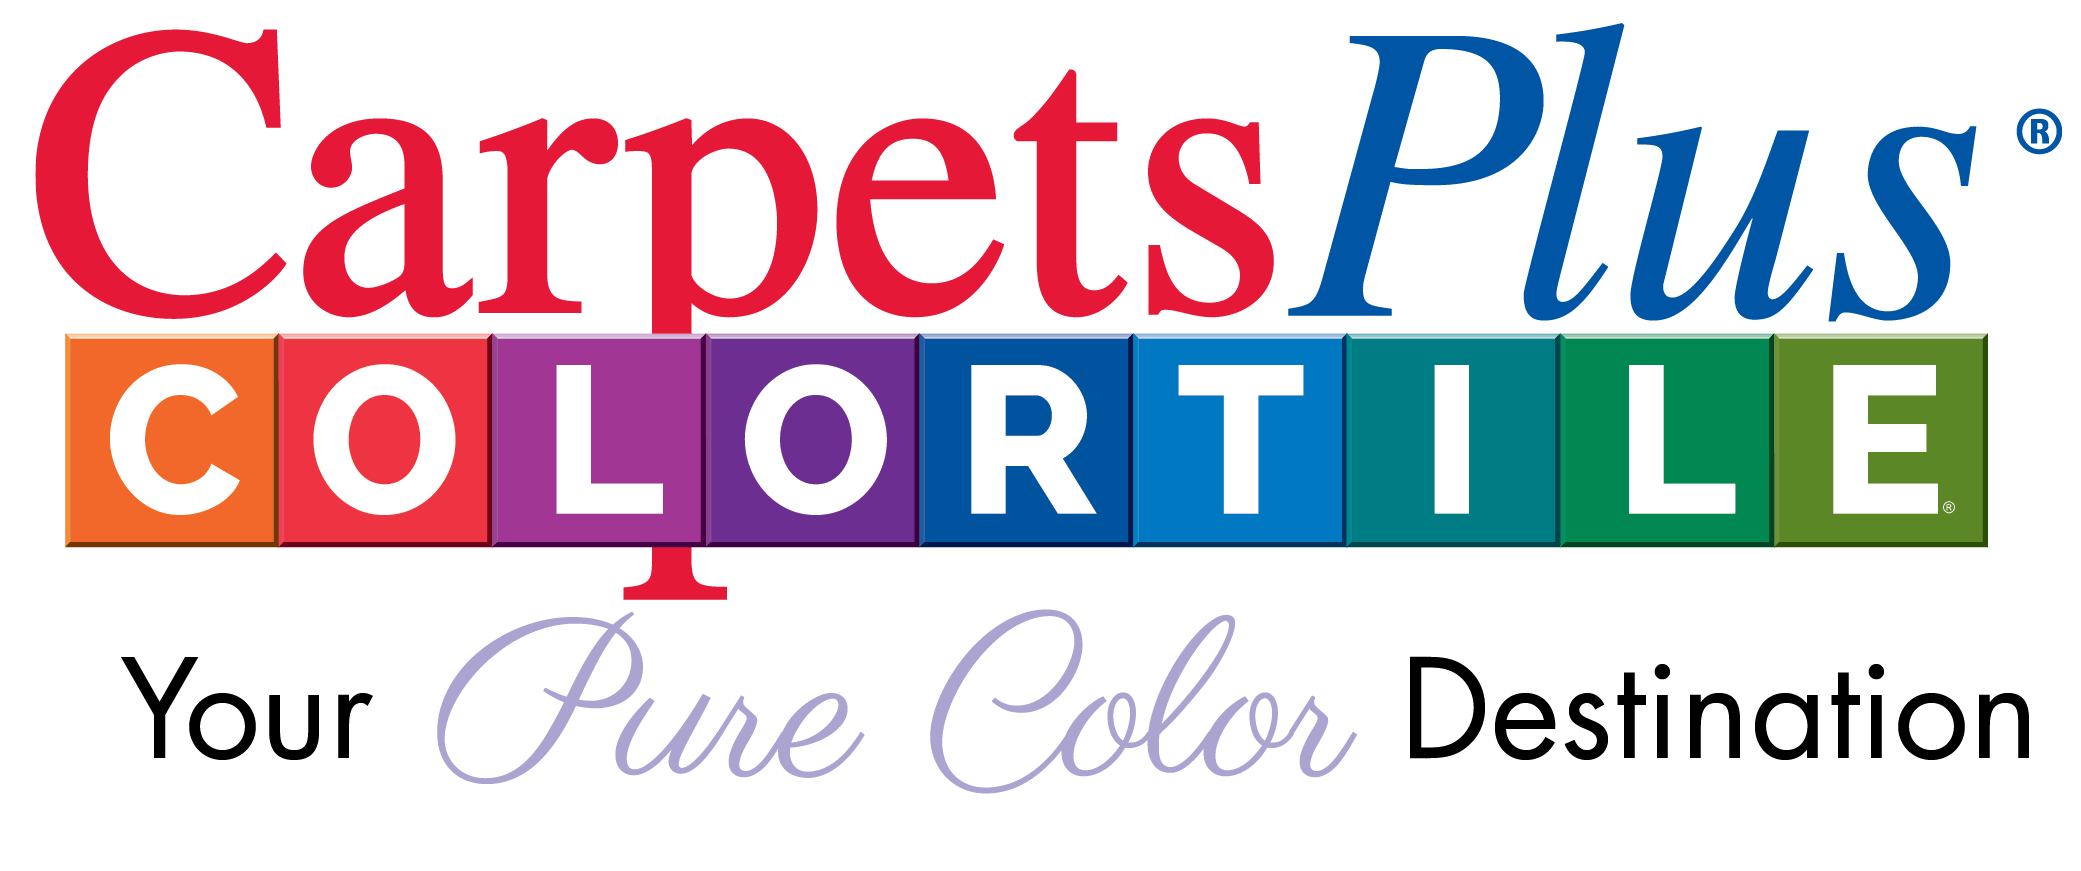 Carpetsplus colortile your pure color destination logo | CarpetsPlus COLORTILE